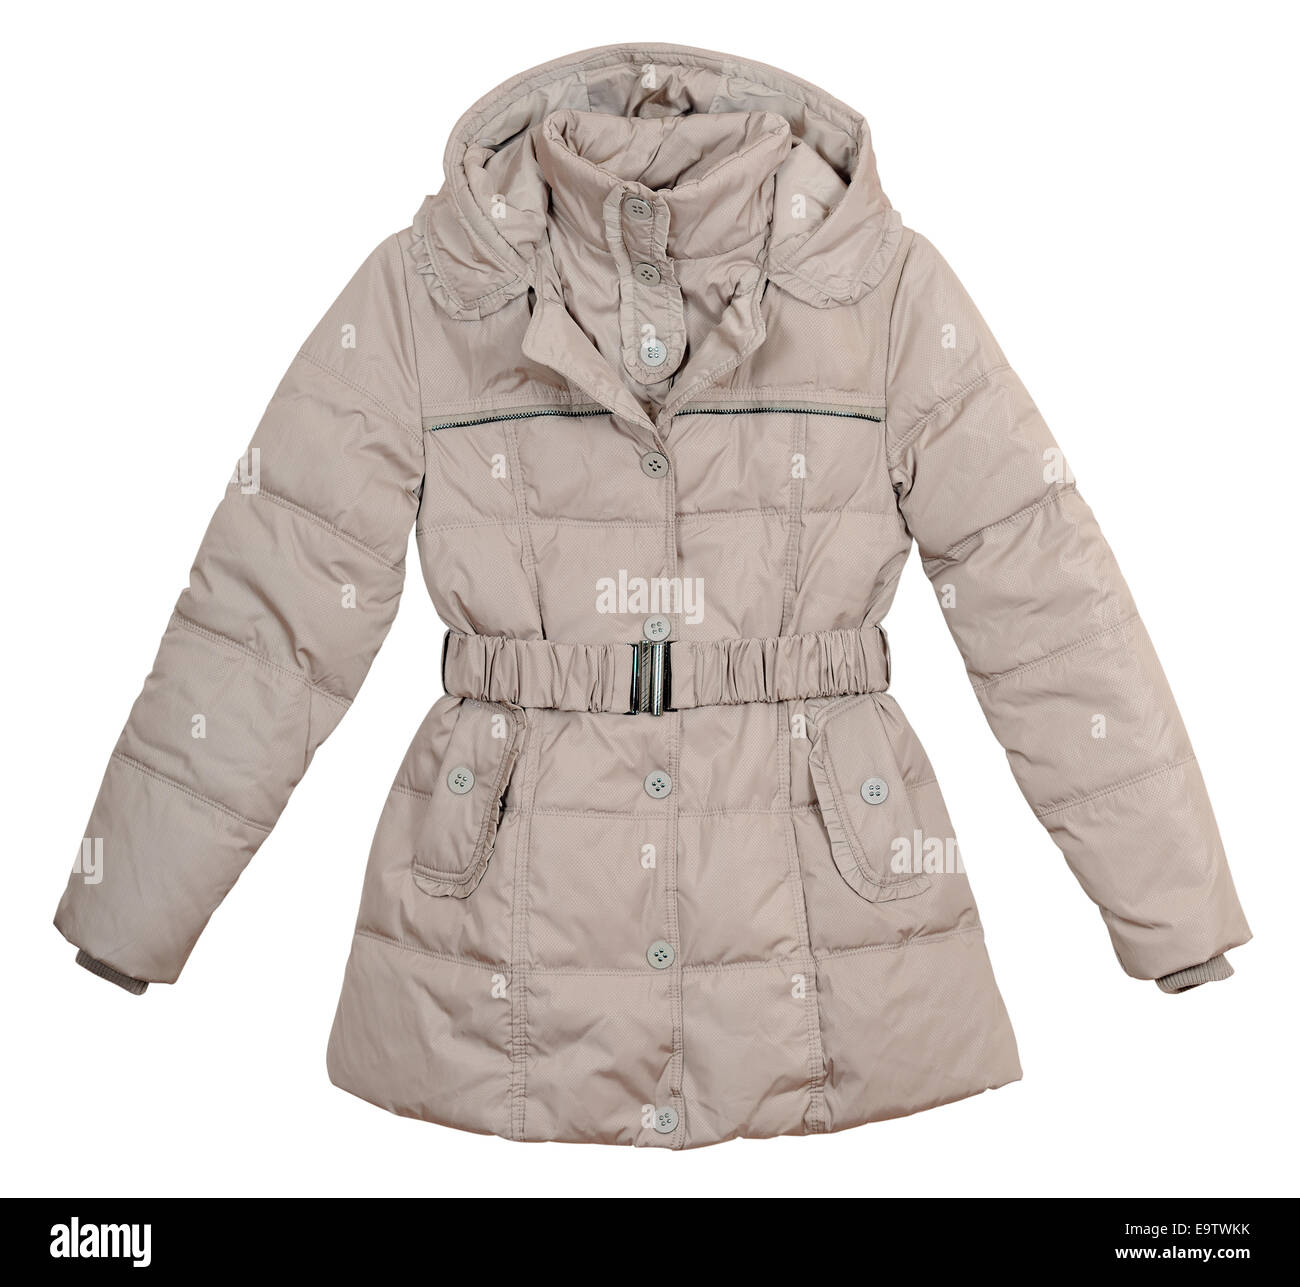 Women's jacket légère sur un fond blanc Banque D'Images